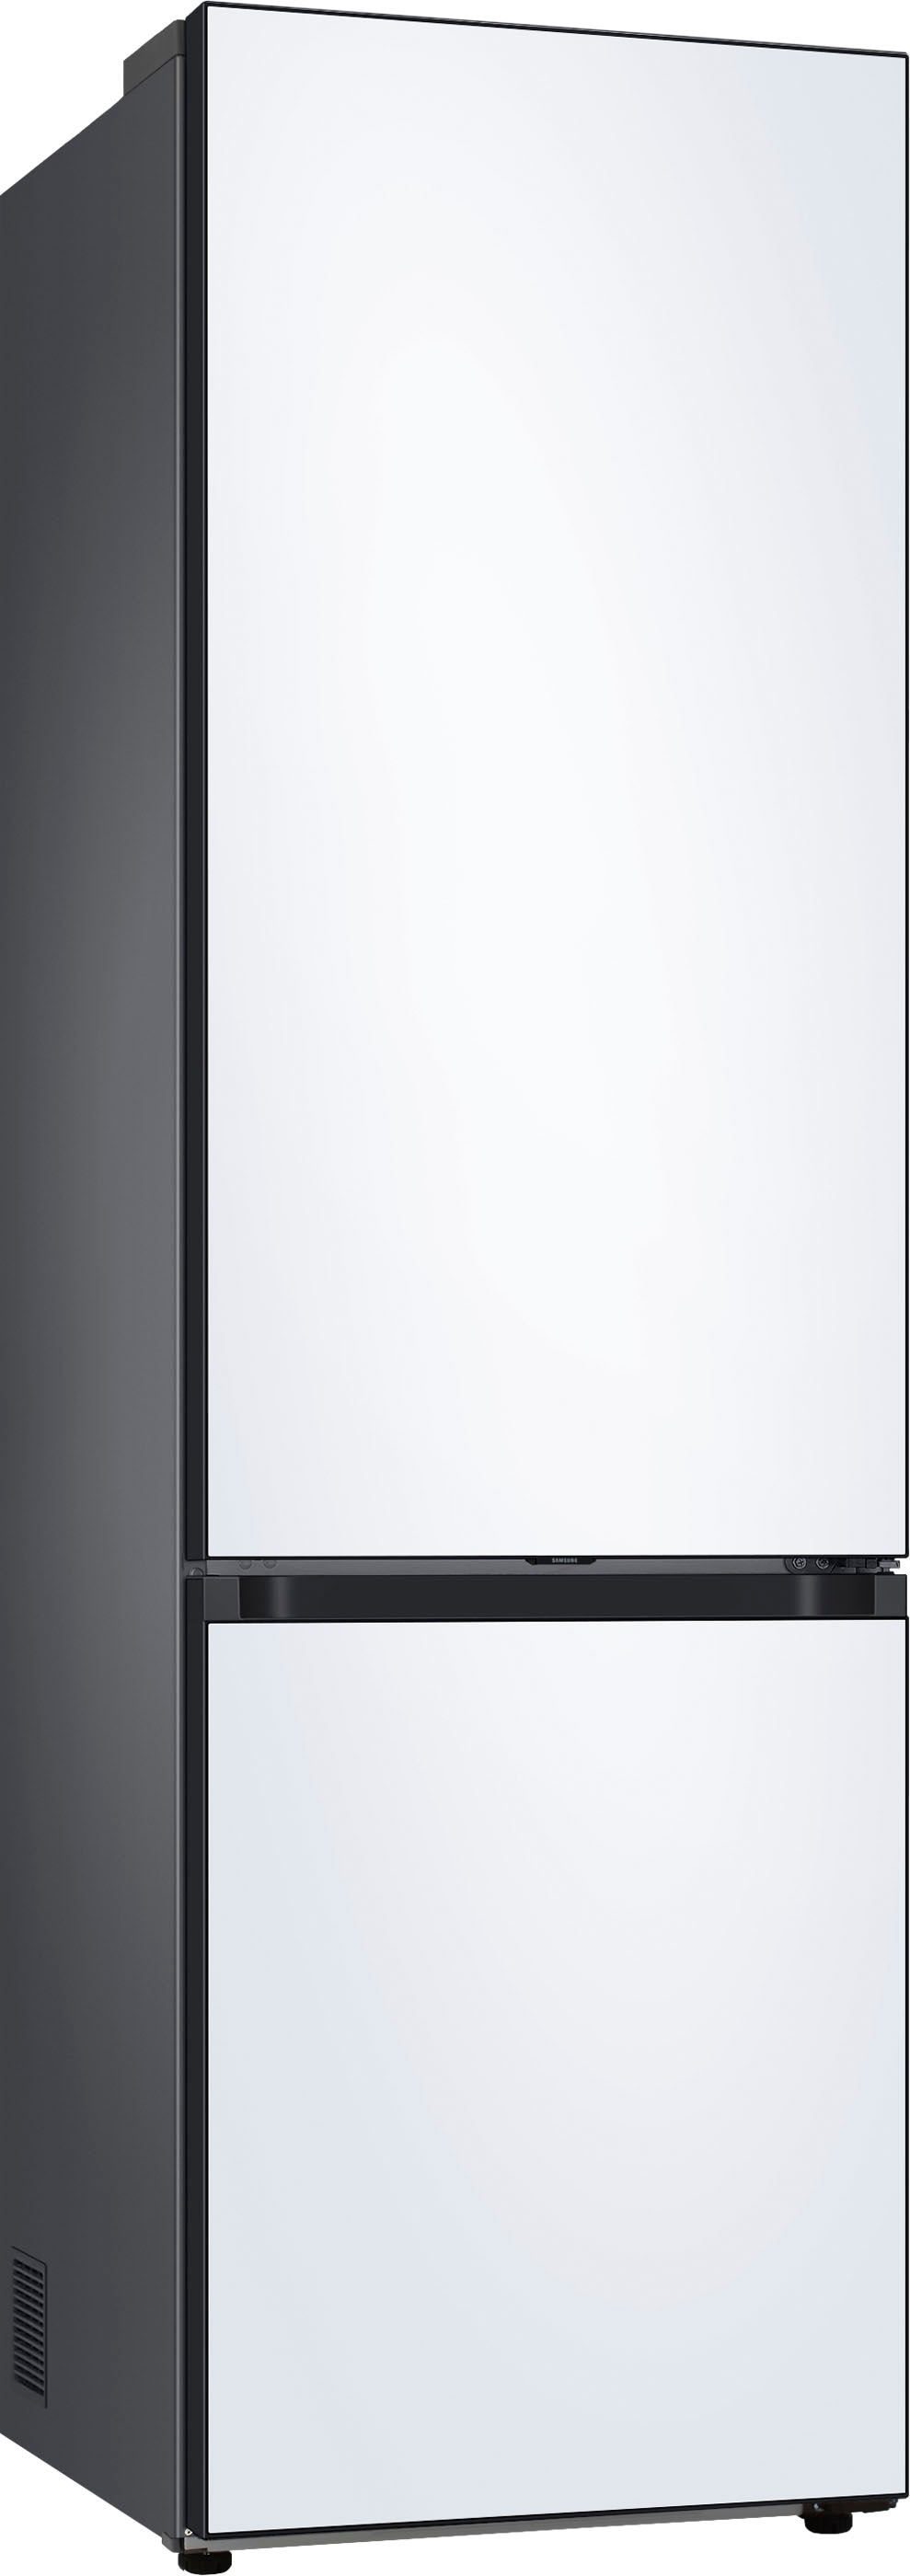 Samsung Kühl-/Gefrierkombination »RL38C6B0CWW«, RL38C6B0CWW, 203 cm hoch, 59 ,5 cm breit jetzt kaufen bei OTTO